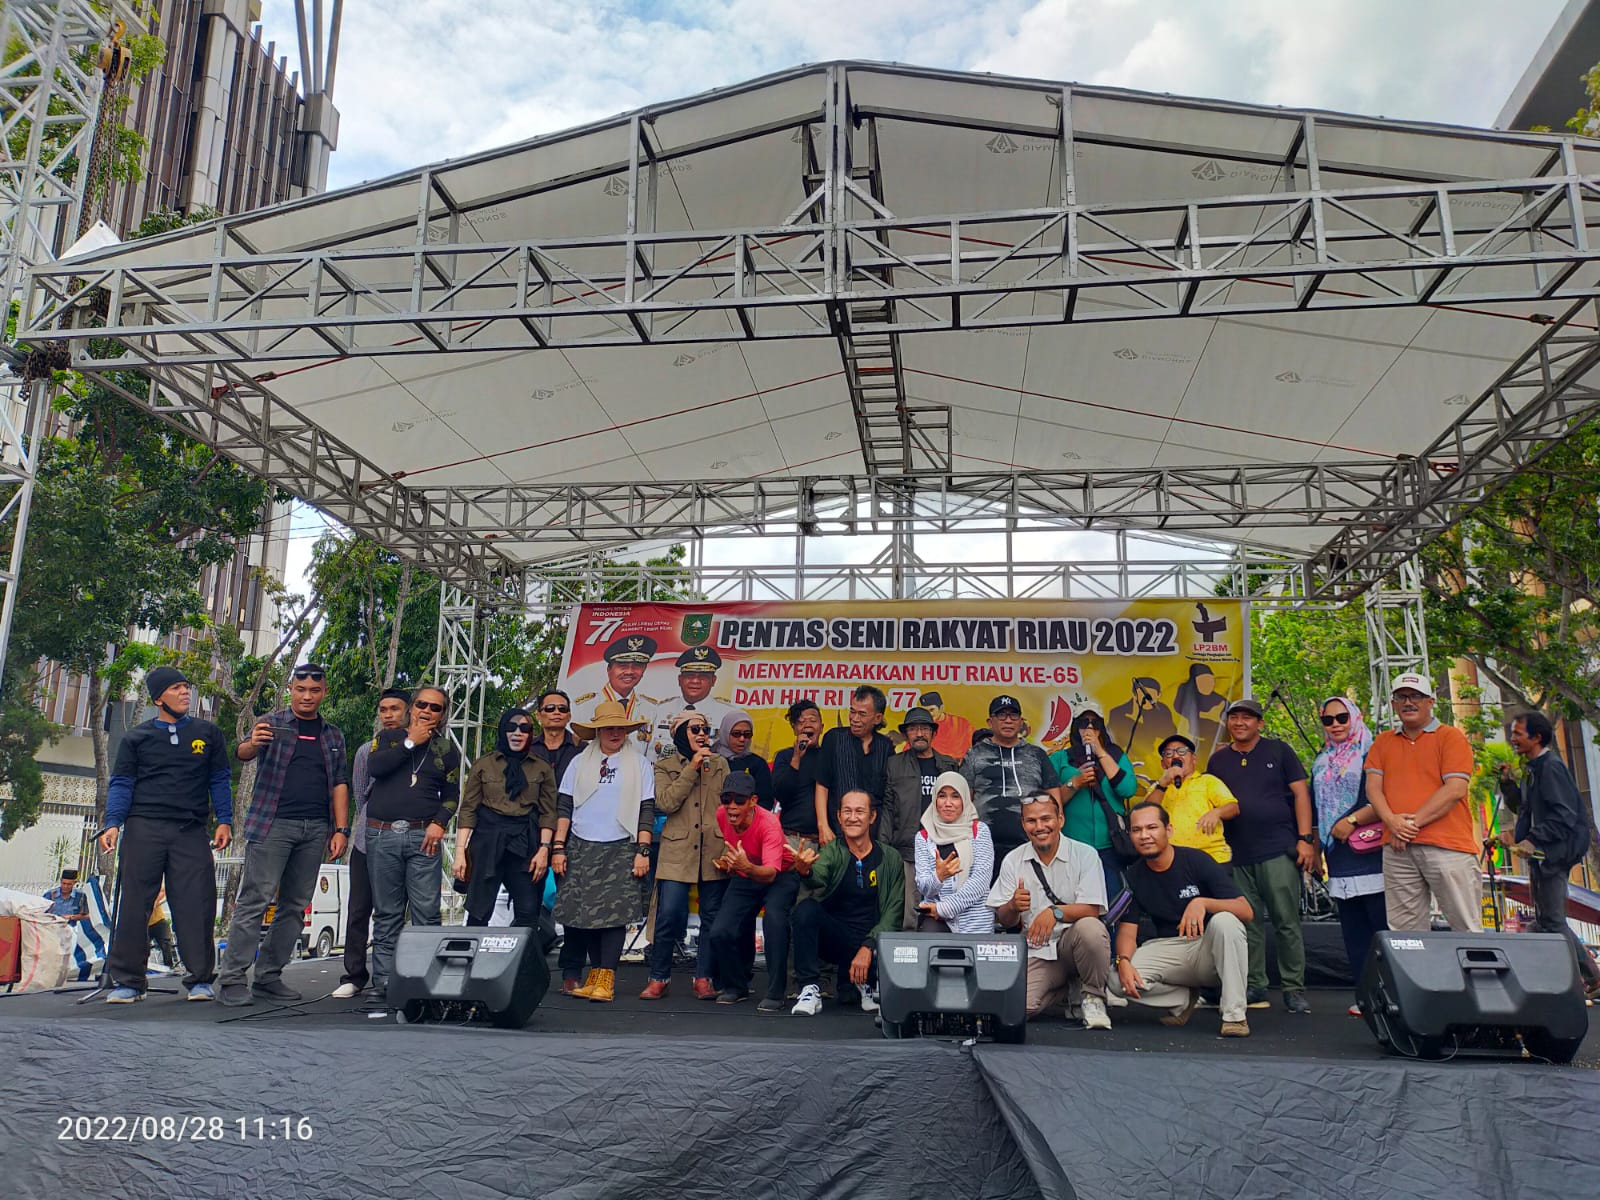 Ribuan Warga Kota Tumpah Ruah Saksikan Pentas Seni Rakyat Riau 2022